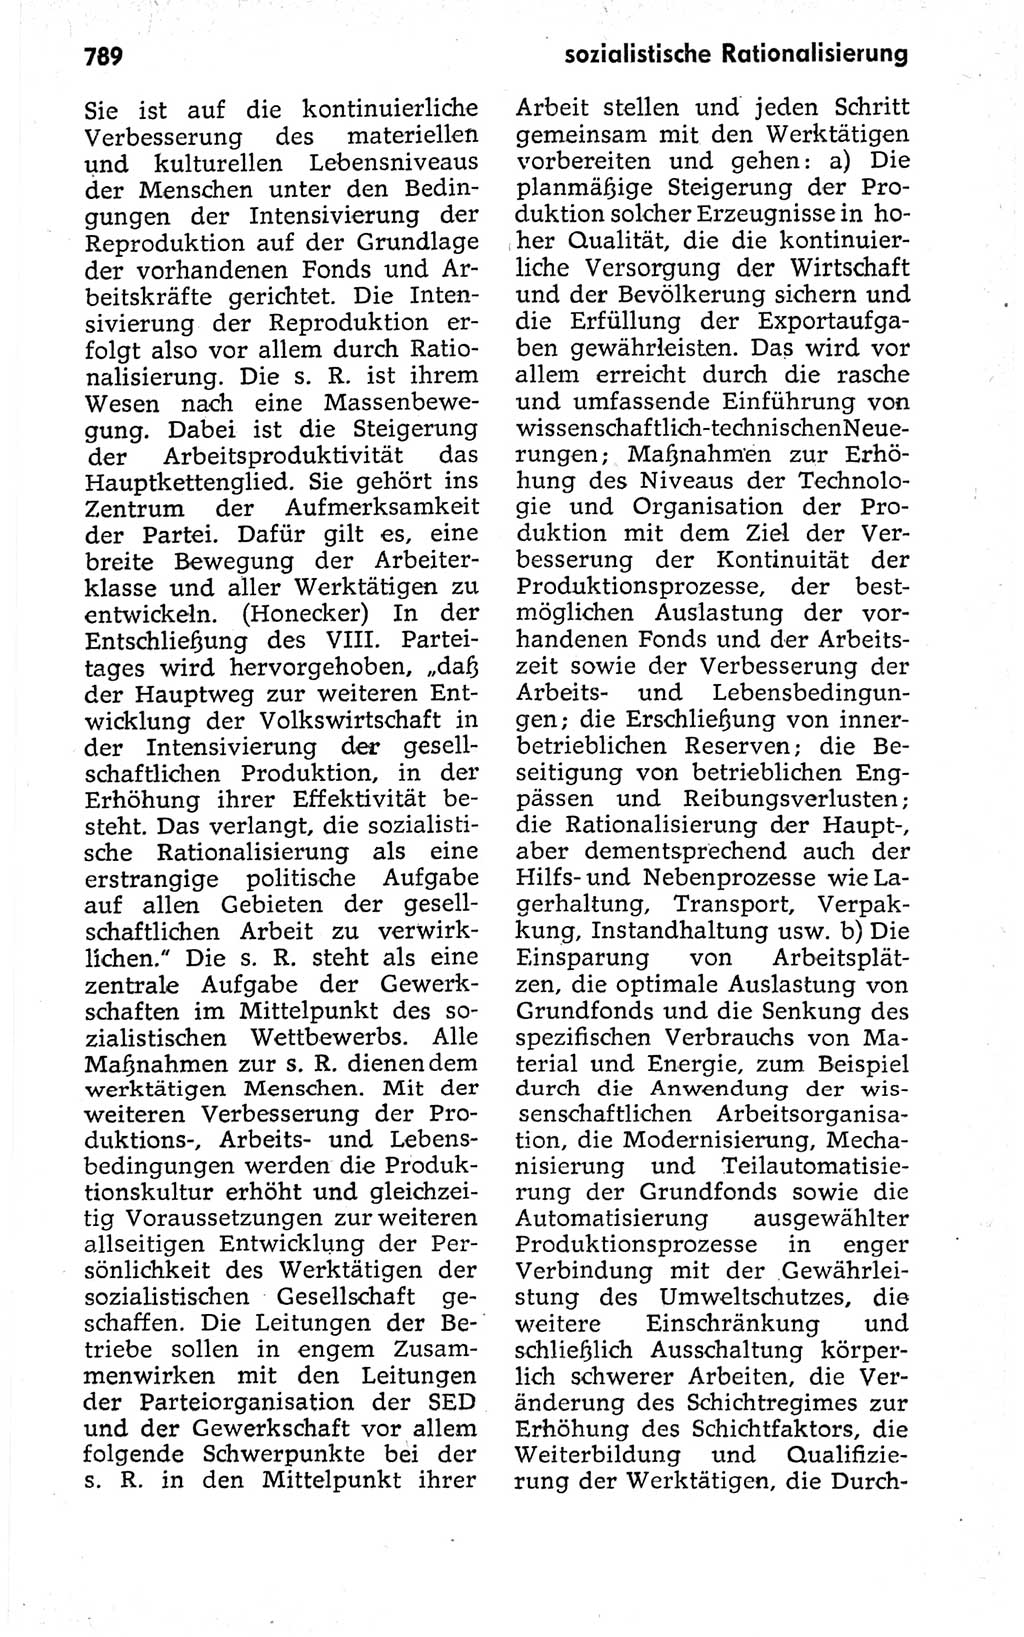 Kleines politisches Wörterbuch [Deutsche Demokratische Republik (DDR)] 1973, Seite 789 (Kl. pol. Wb. DDR 1973, S. 789)